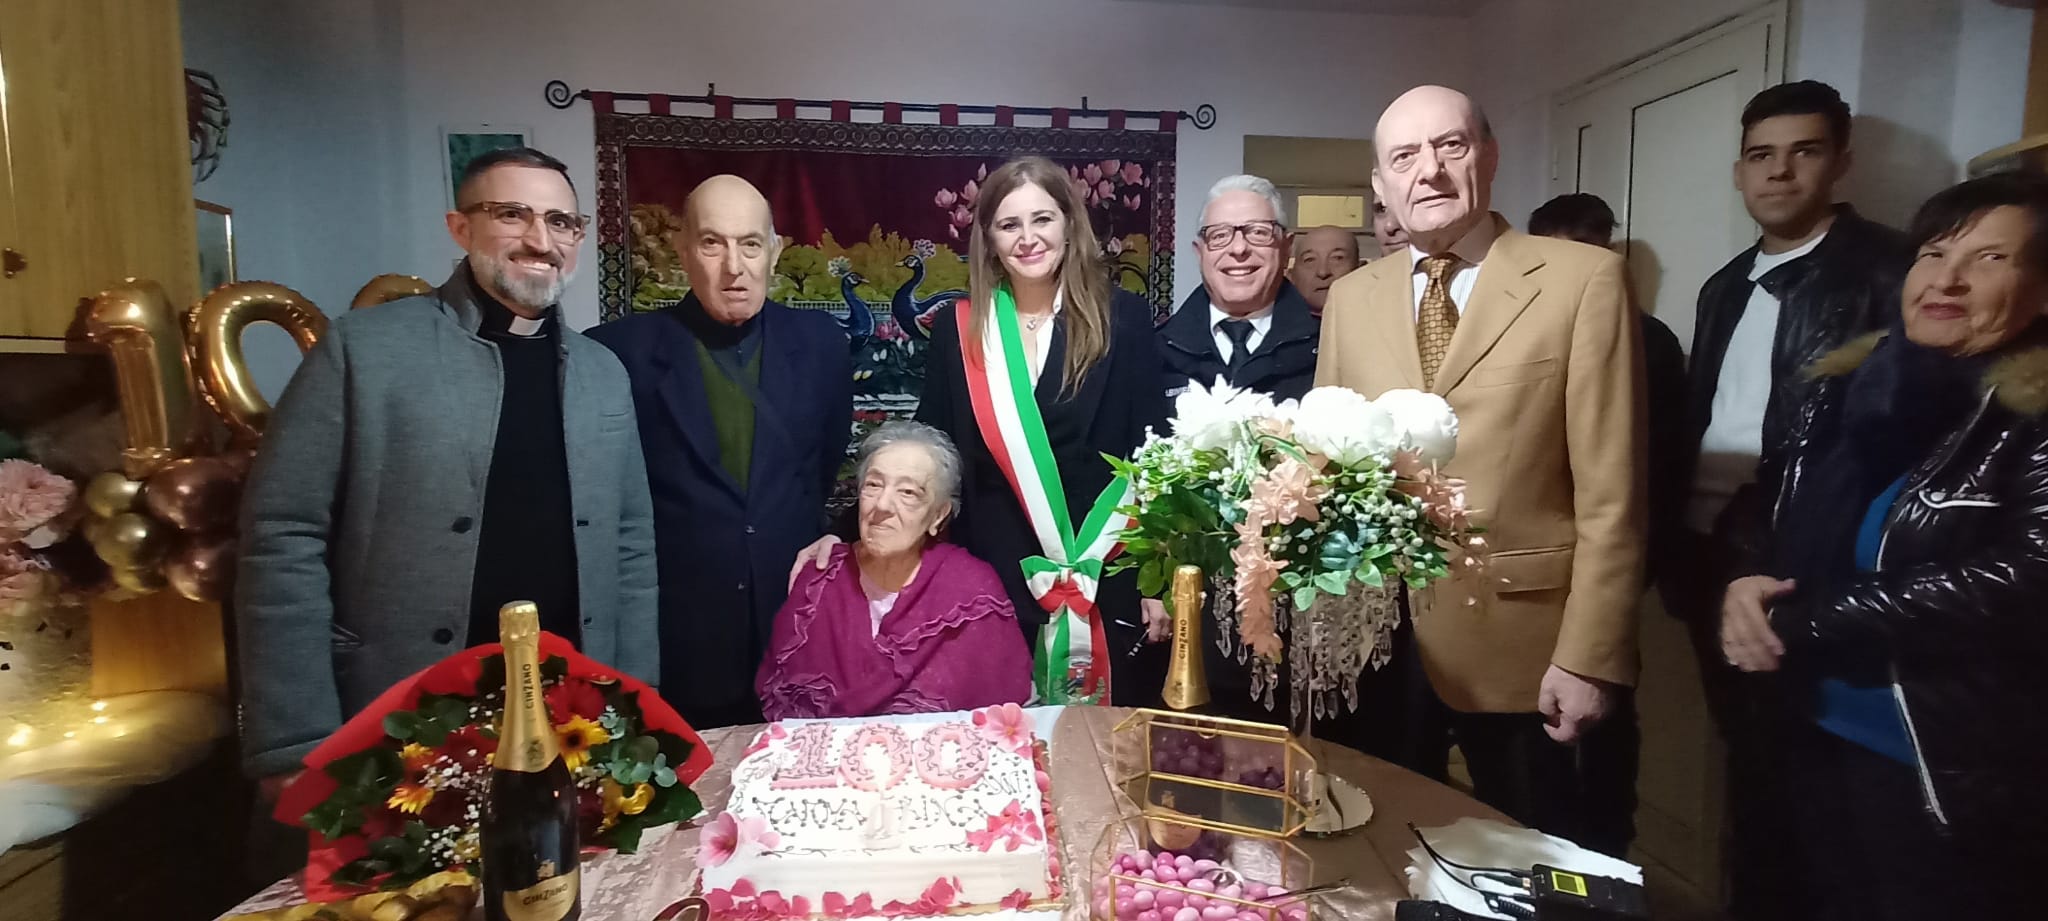 Realmonte festeggia le 100 candeline della nonnina Cesarina Burato